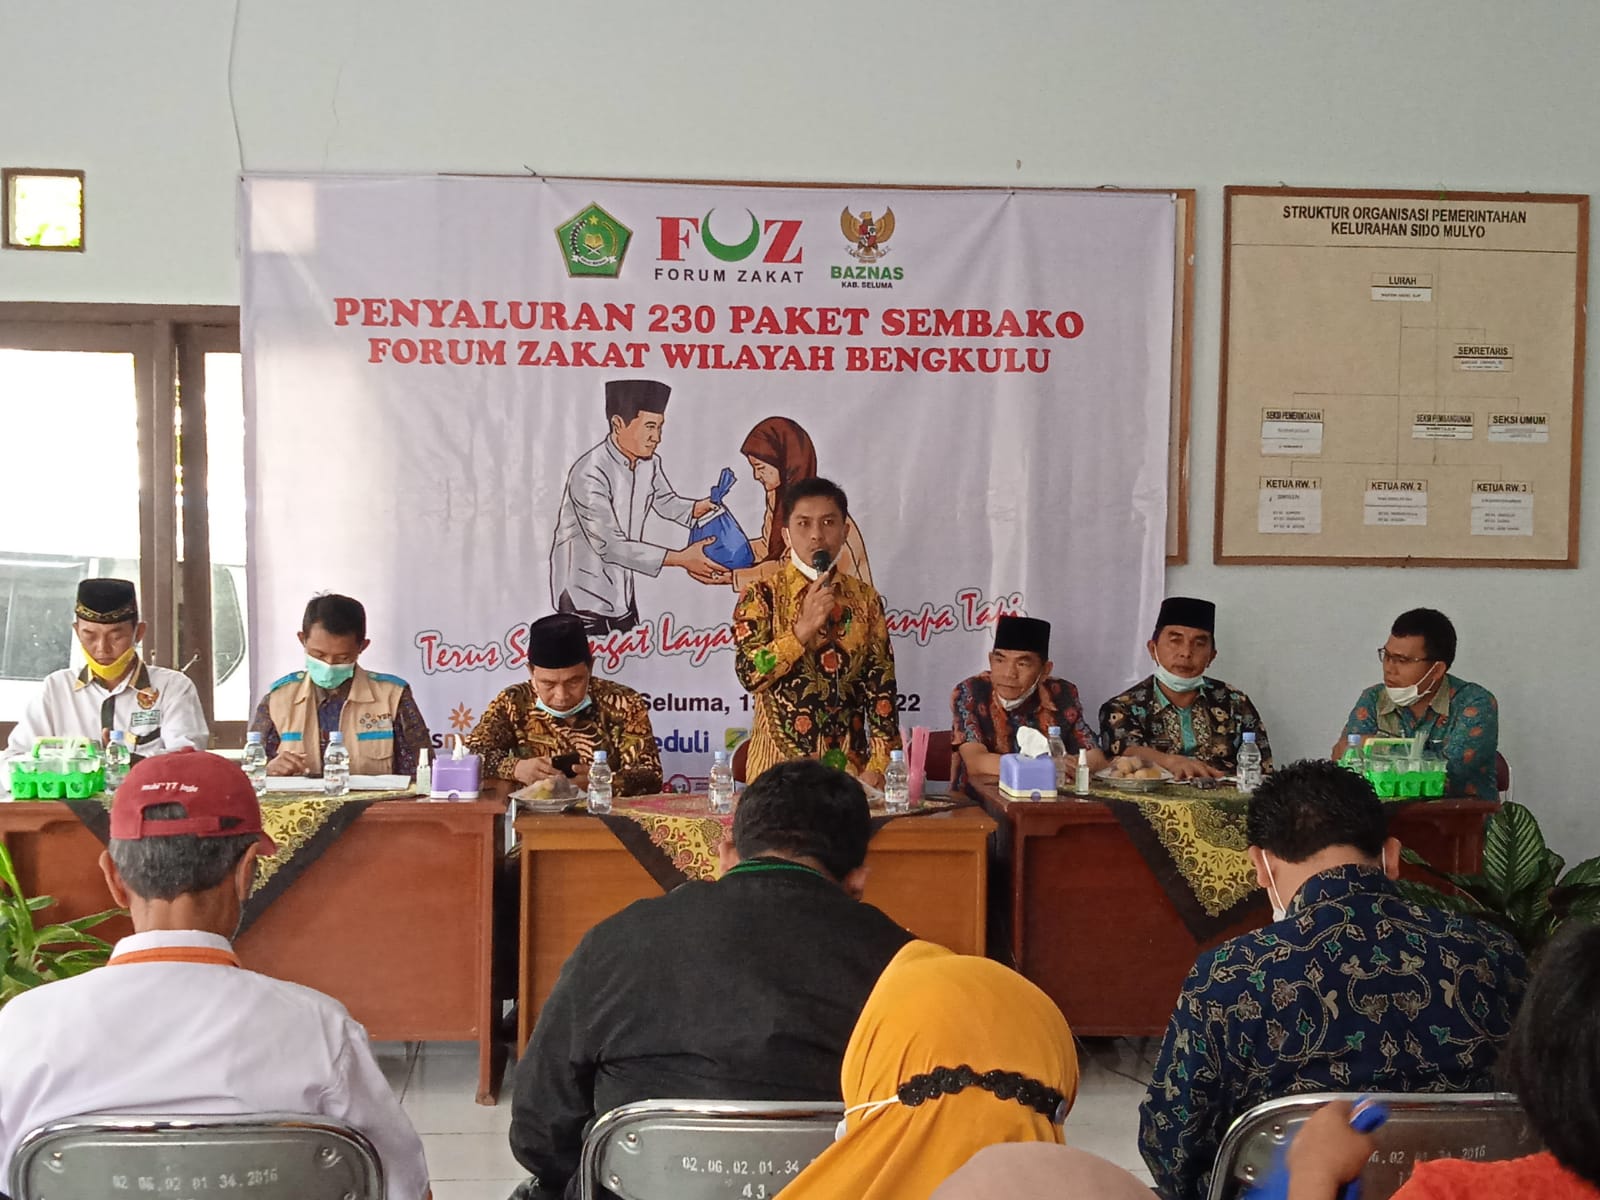 OPZ Anggota Forum Zakat Bengkulu Kolaborasi Salurkan Ratusan Paket Sembako